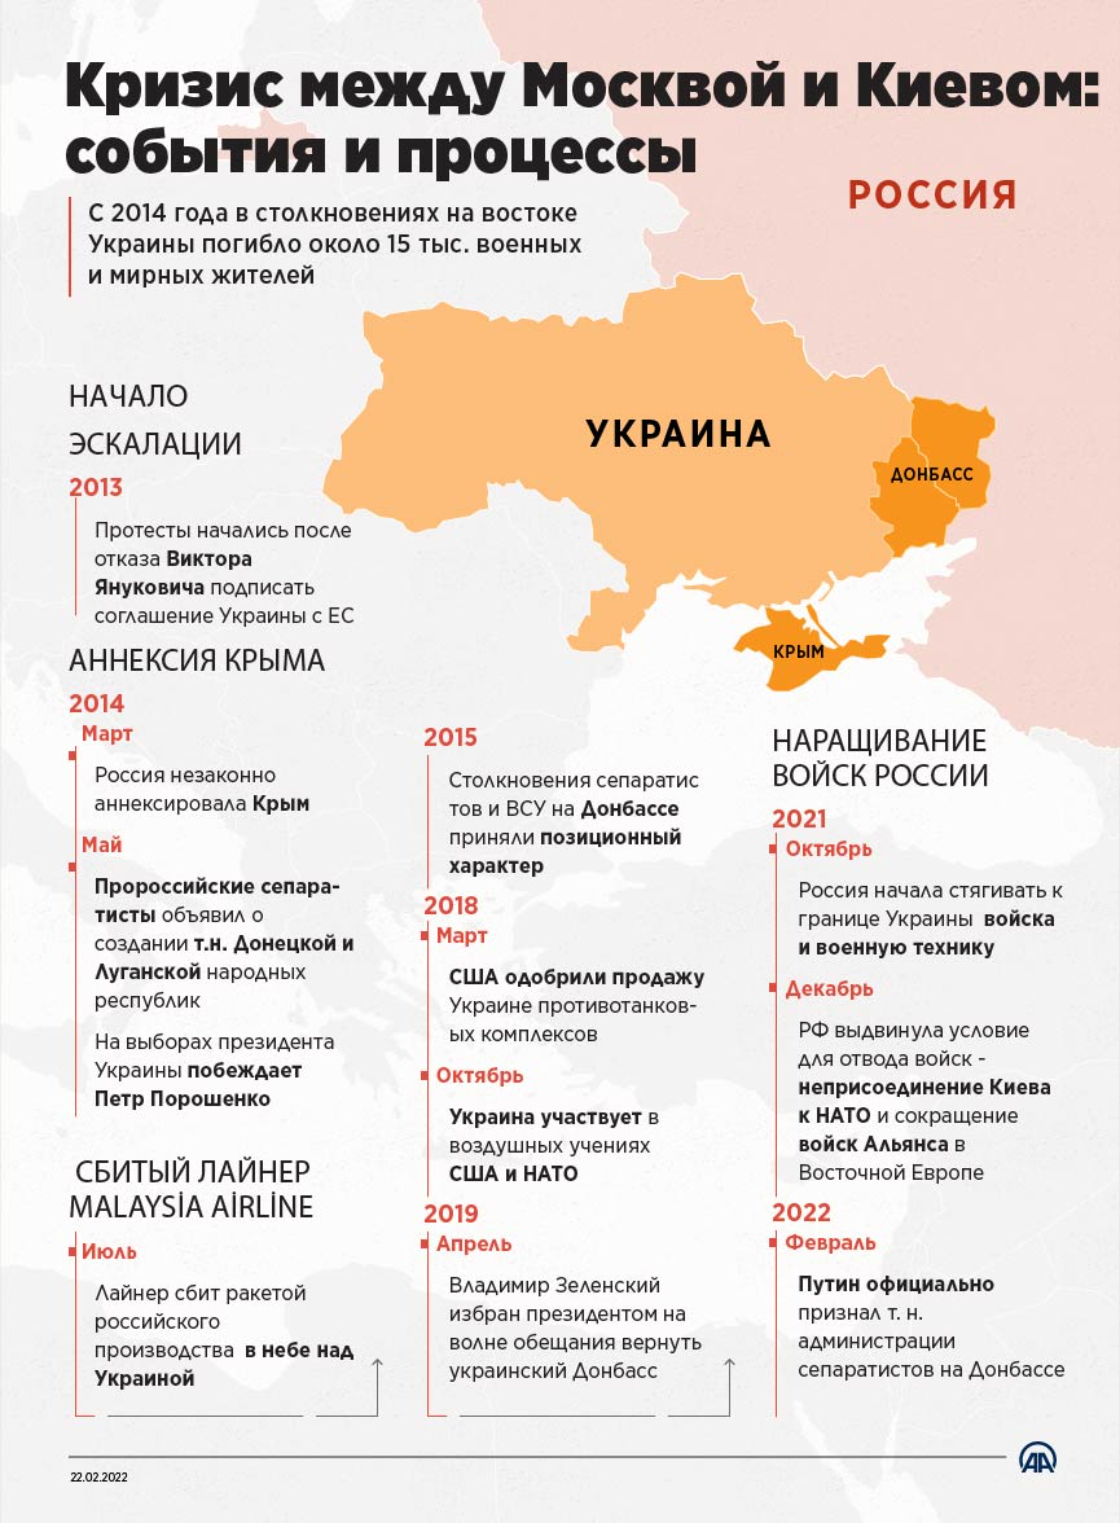 Кризис между Москвой и Киевом: процессы и события